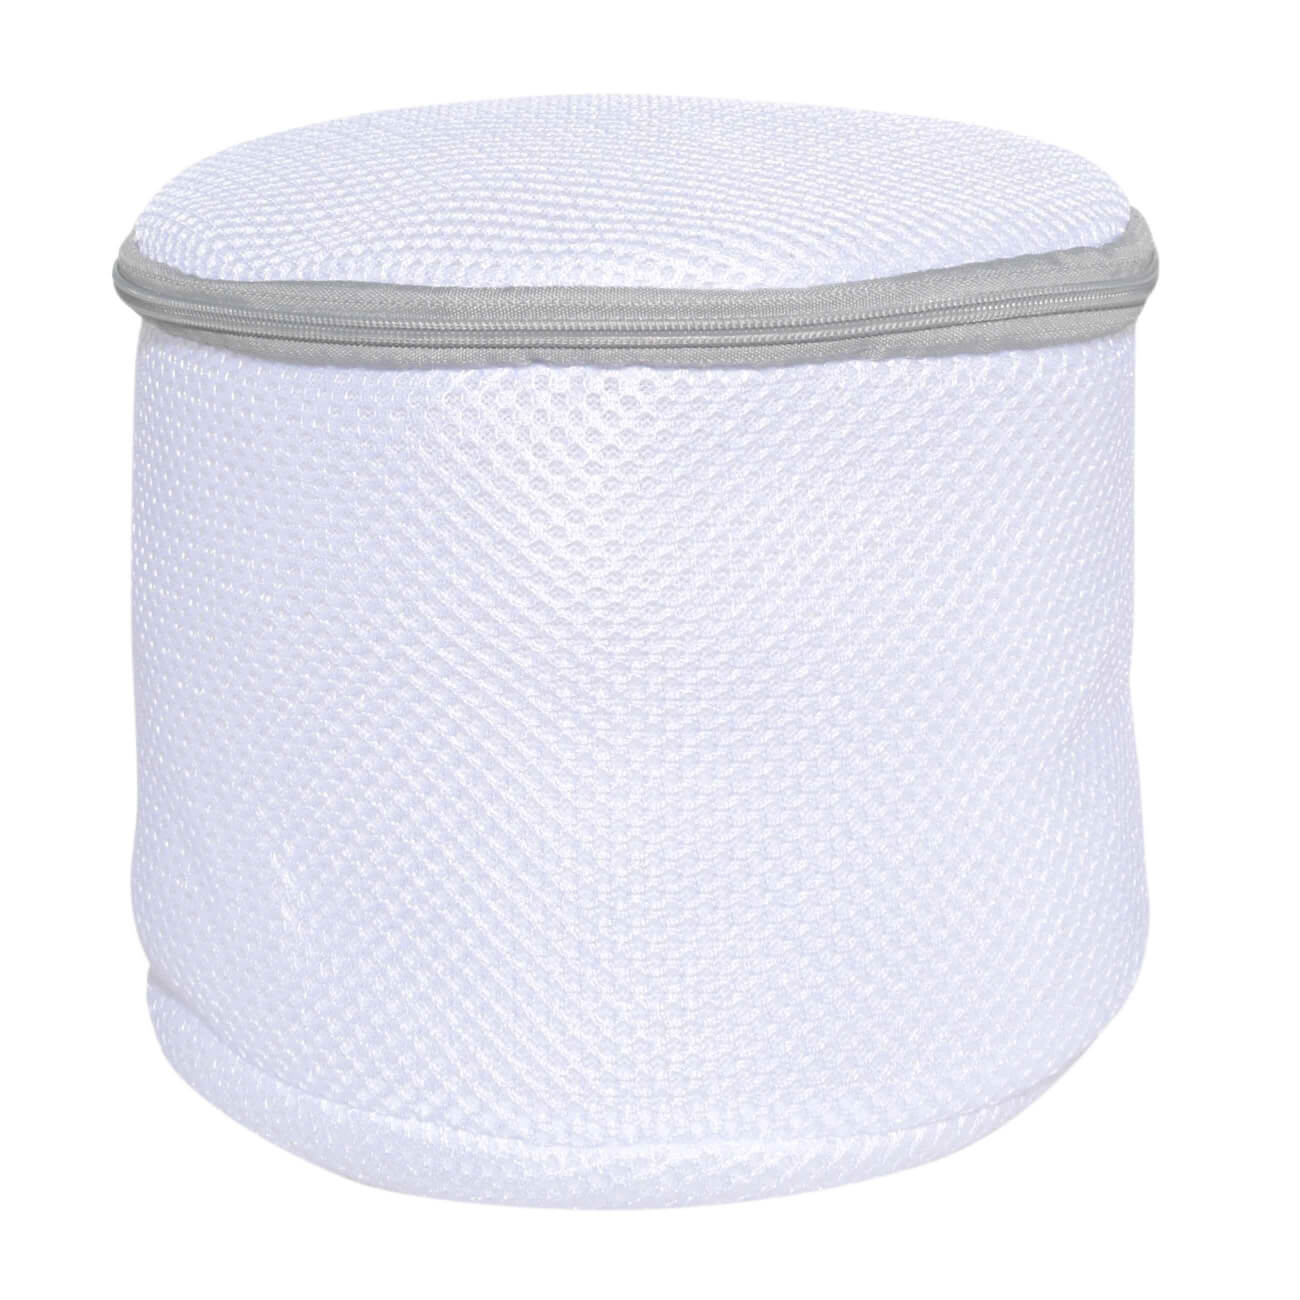 Мешок для стирки бюстгалтеров, 17х15 см, с защитой, полиэстер, бело-серый, Safety мешок для стирки нижнего белья 25х30 см полиэстер бело серый safety